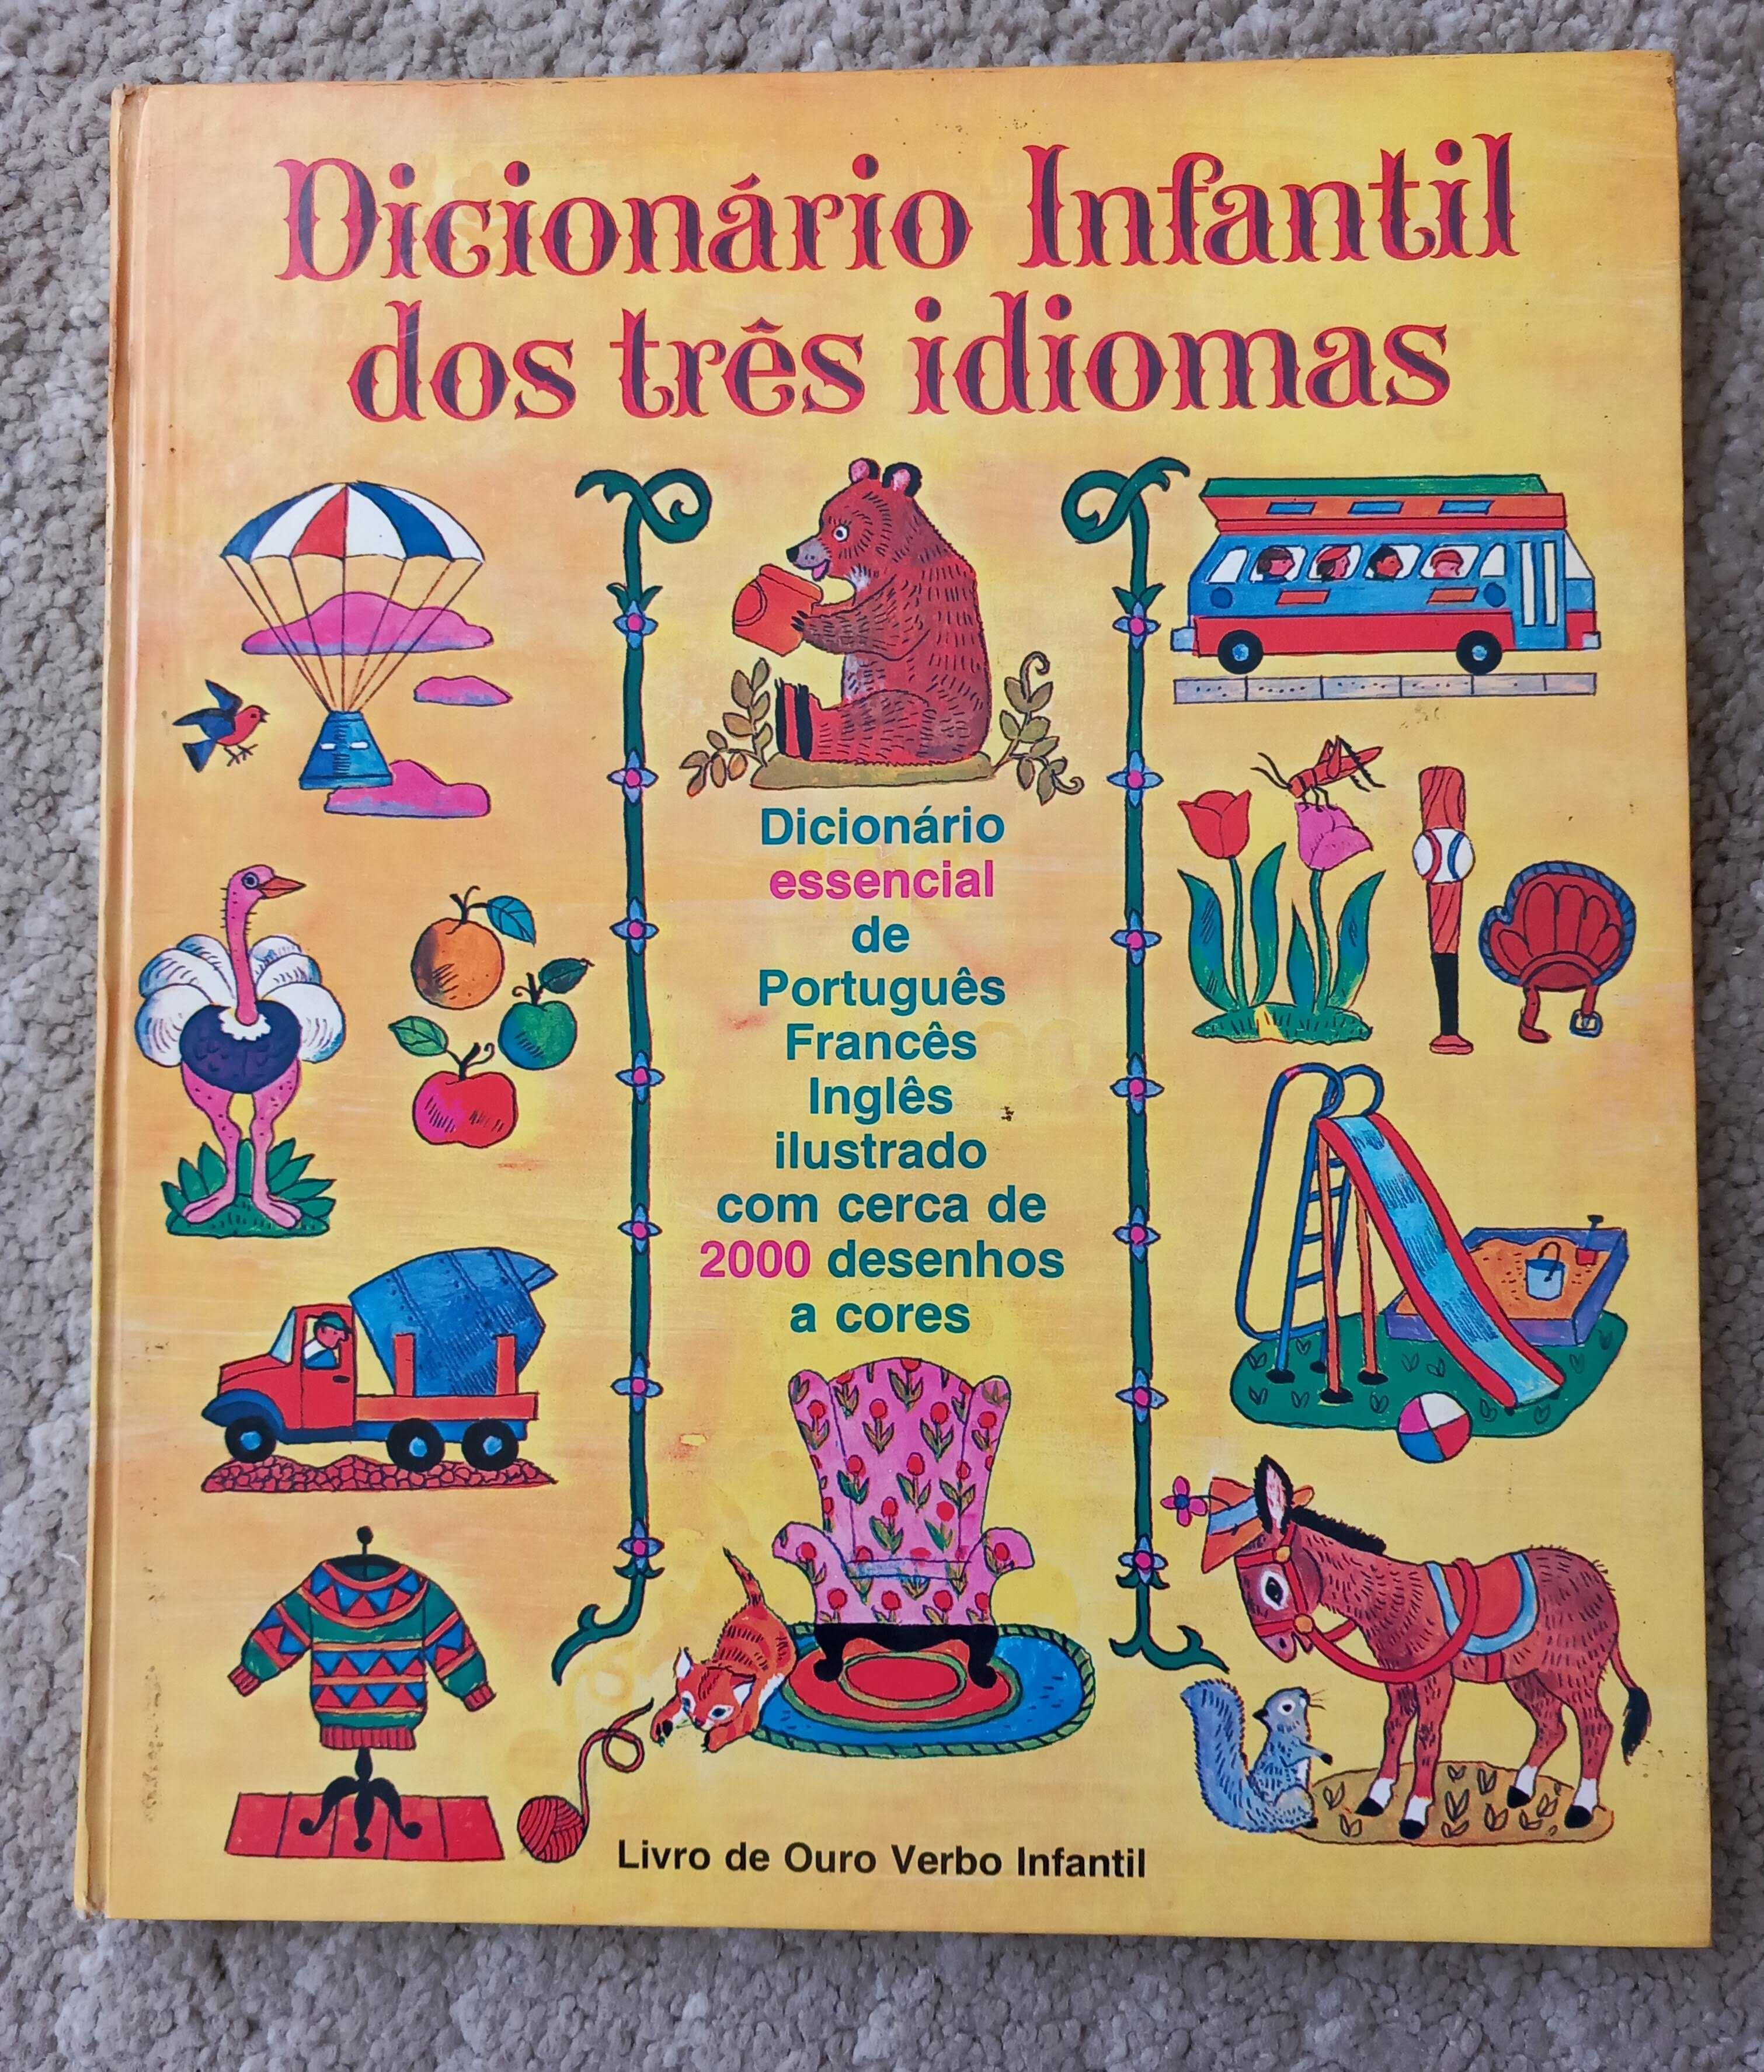 Dicionário infantil dos três idiomas